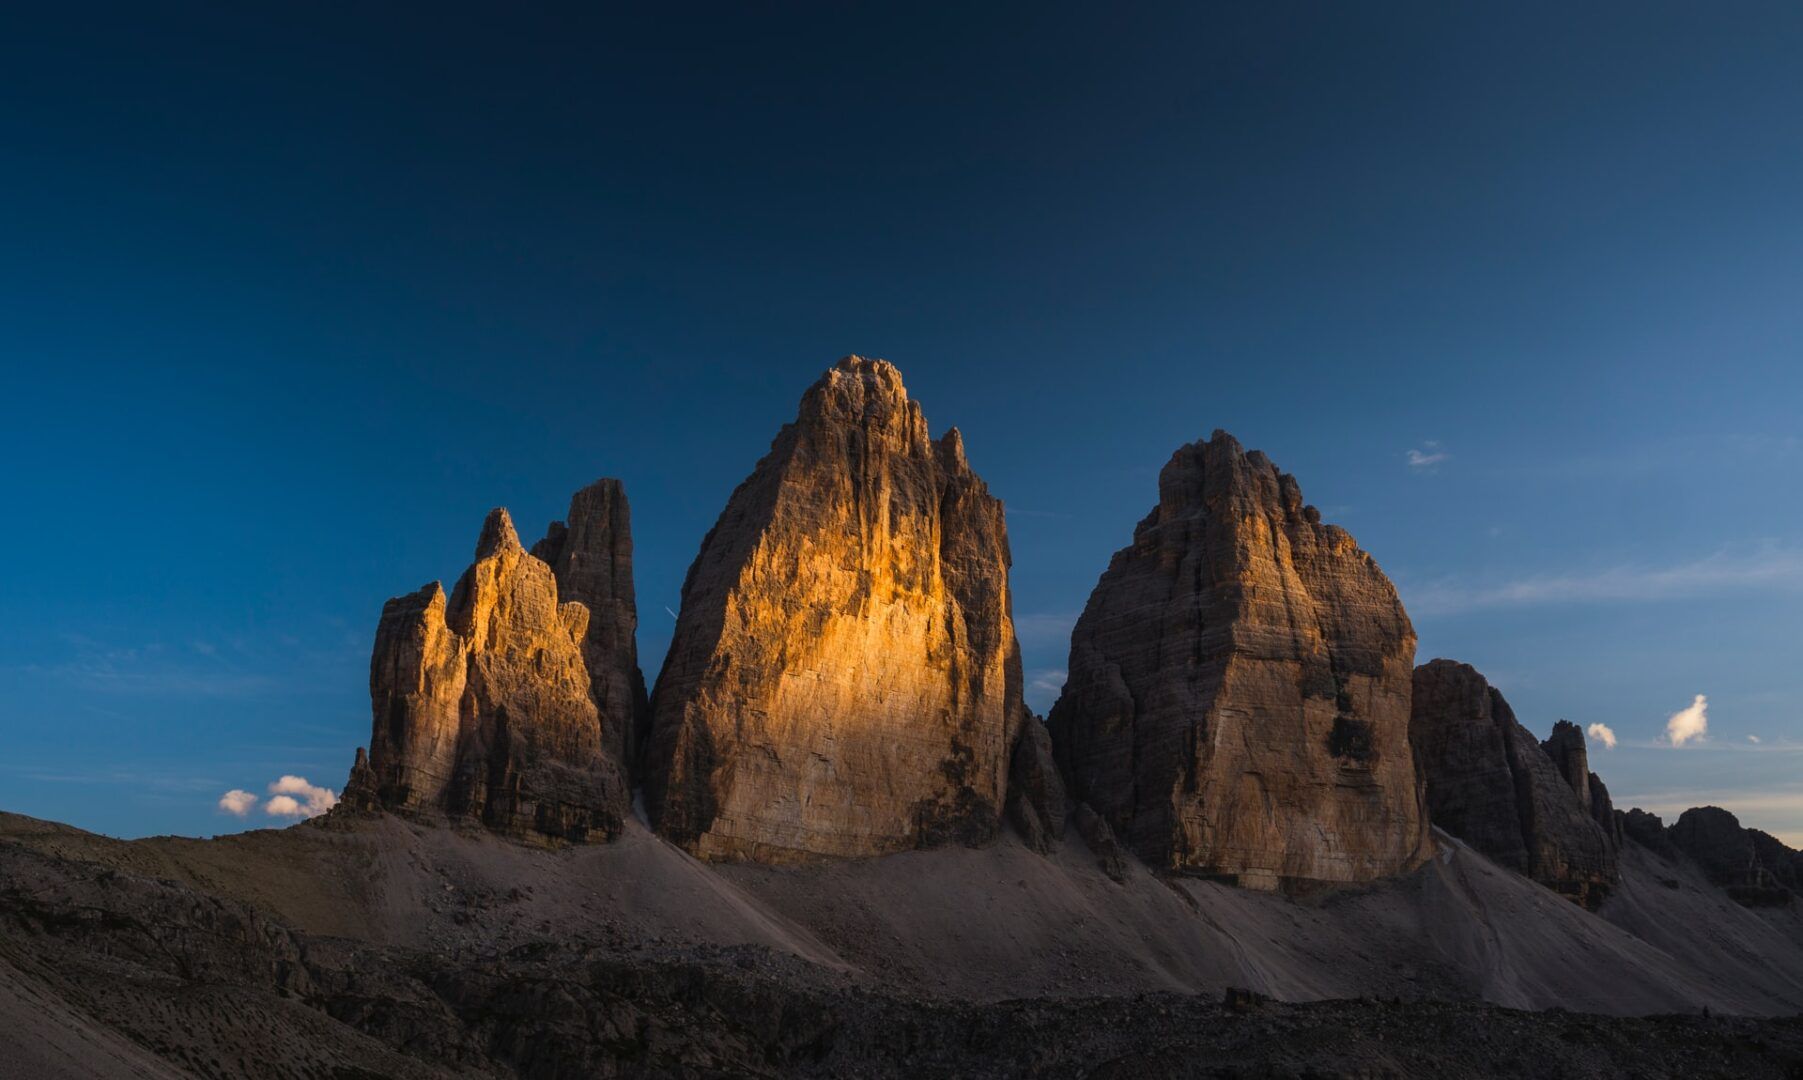 Estate in montagna: 7 idee per le vacanze al fresco restando in Italia